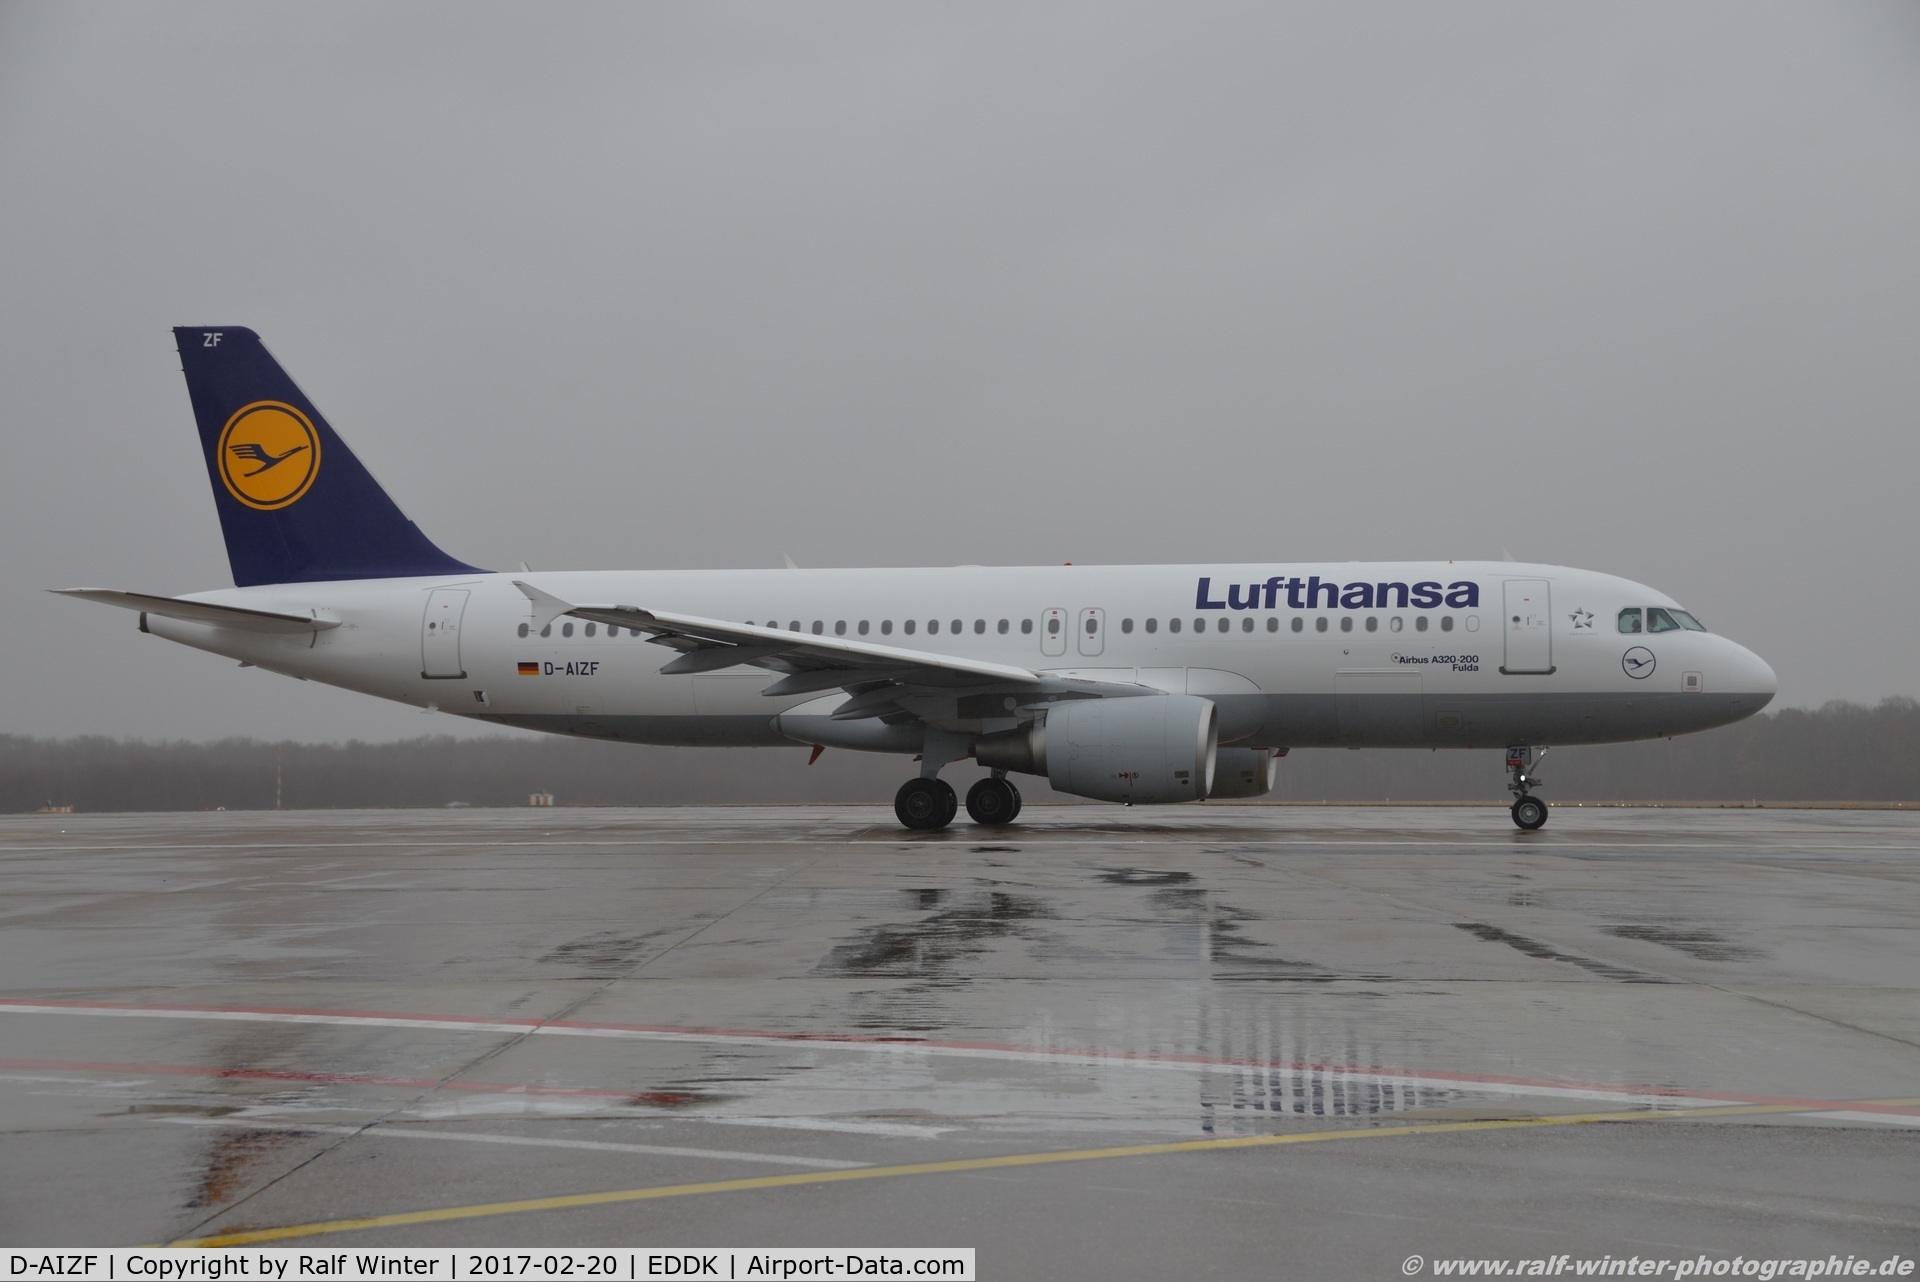 D-AIZF, 2010 Airbus A320-214 C/N 4289, Airbus A320-214 - LH DLH Lufthansa 'Fulda' - 4289 - D-AIZF - 20.02.2017 - CGN